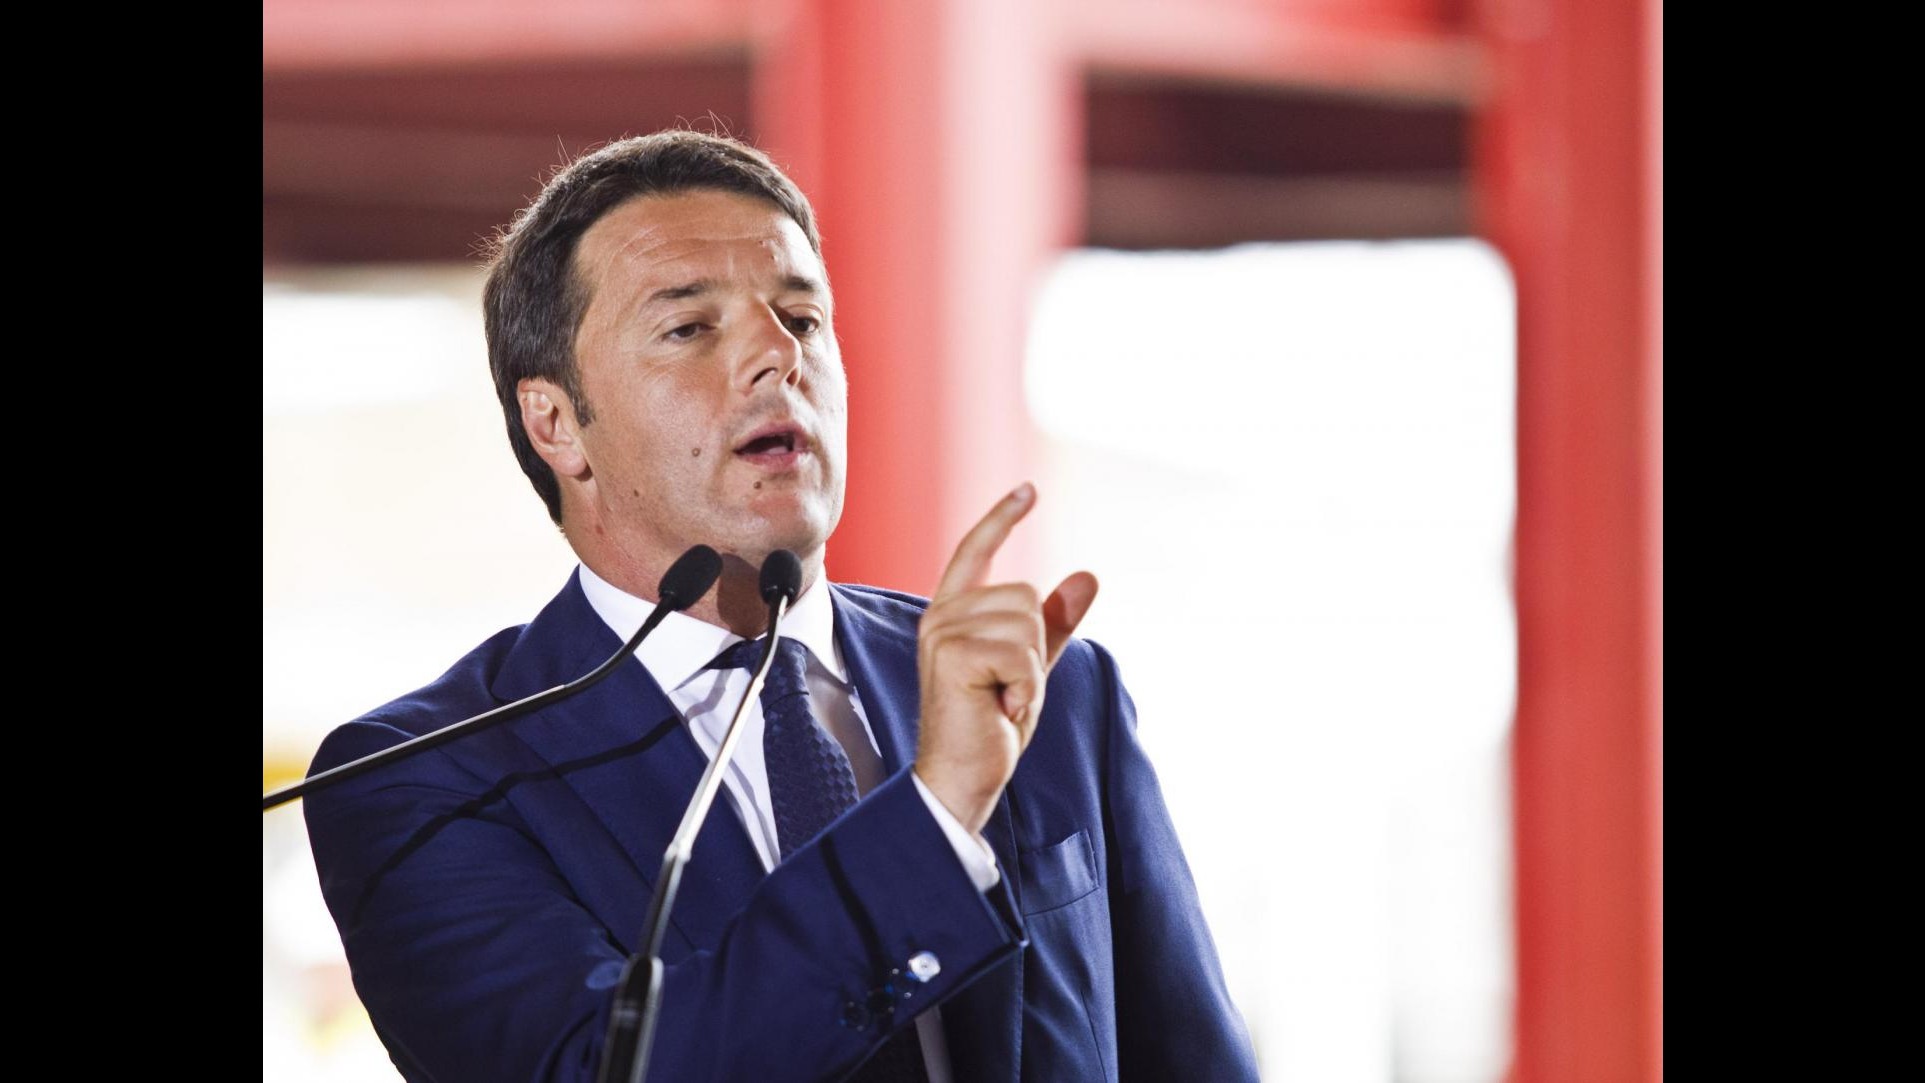 Lavoro, Renzi: Liberiamo possibilità di assumere, meno rigidità